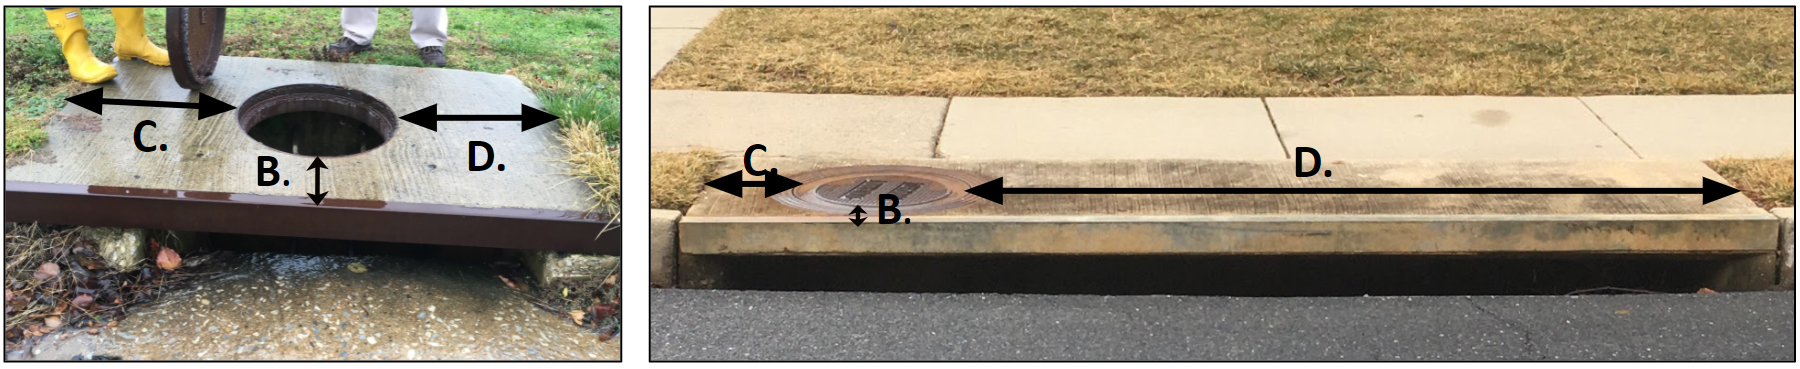 open curb inlet survey manhole distance measurements